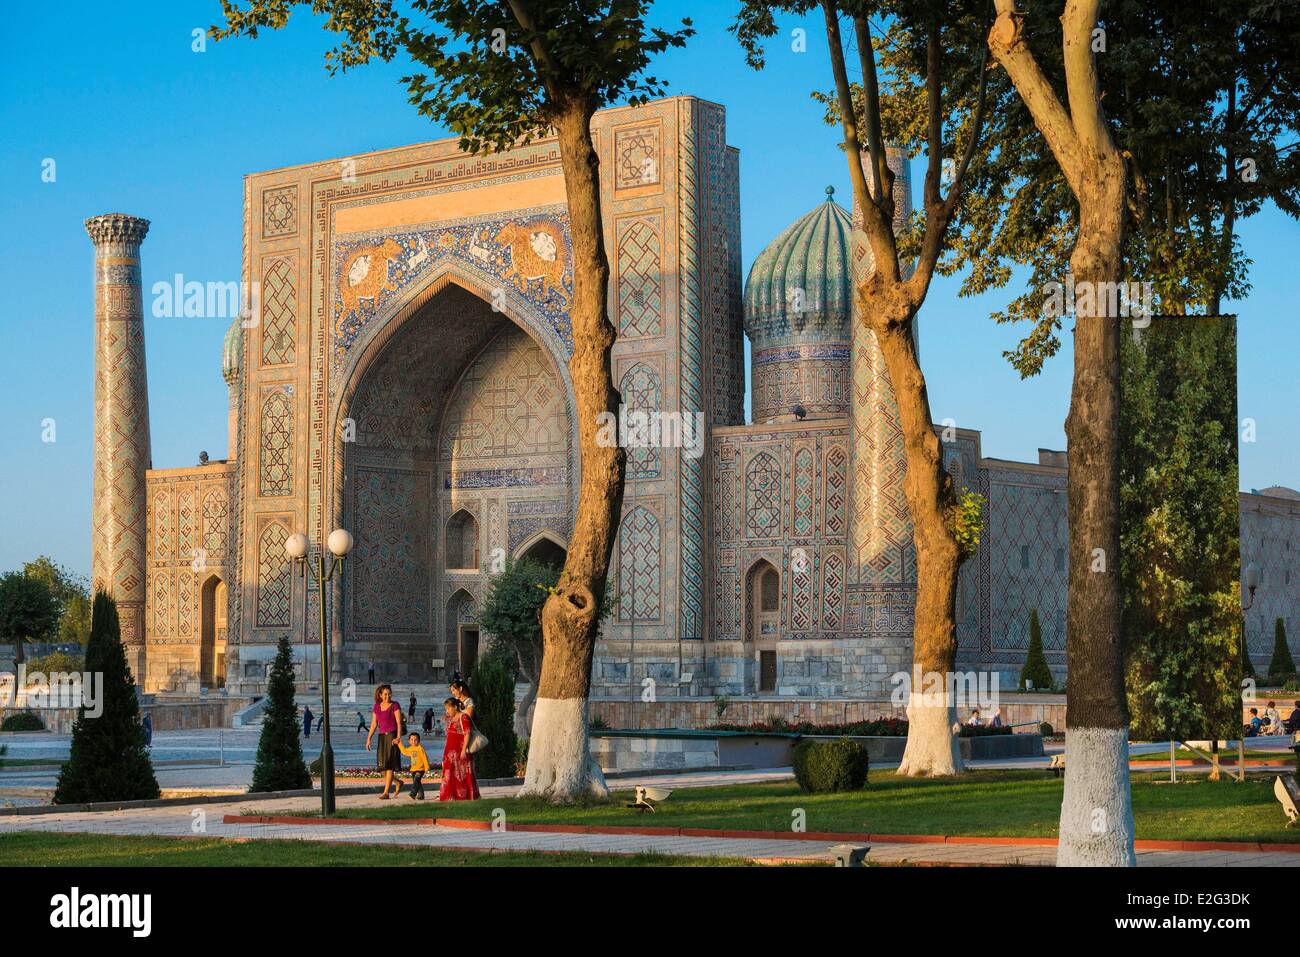 Usbekistan-Seidenstraße-Samarkand aufgeführt als Weltkulturerbe durch die UNESCO Registan Quadrat Sher Dor Madrasah gesehen vom Minarett Stockfoto